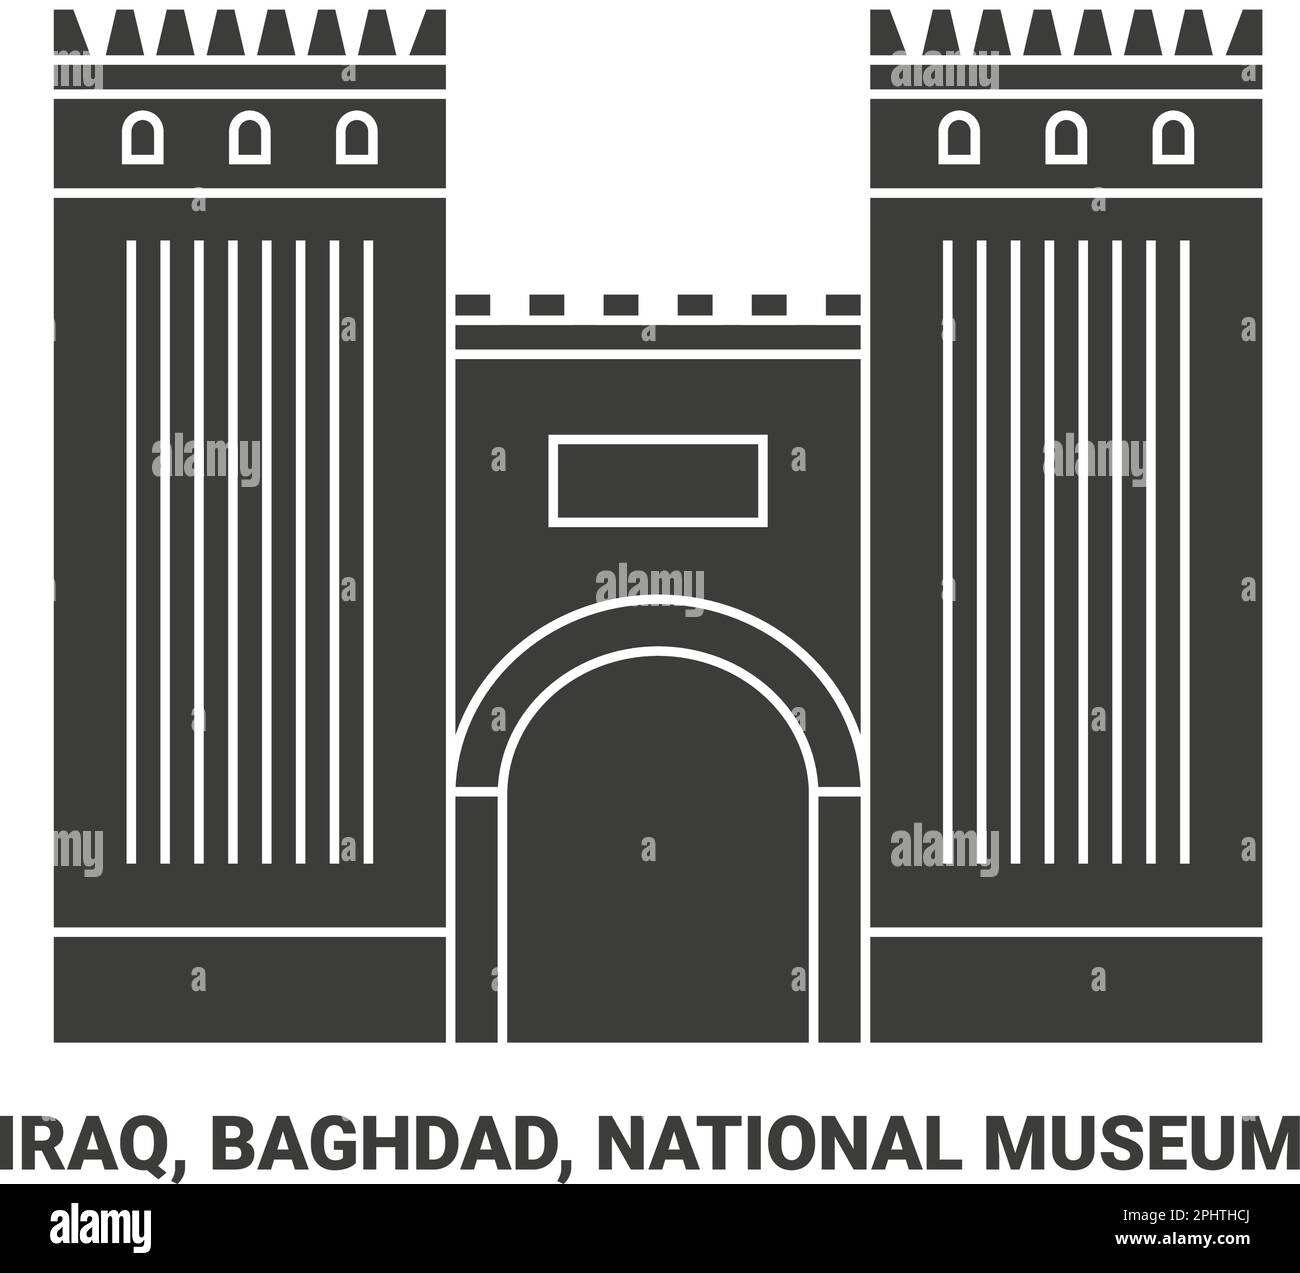 Irak, Bagdad, National Museum Reise-Wahrzeichen-Vektordarstellung Stock Vektor